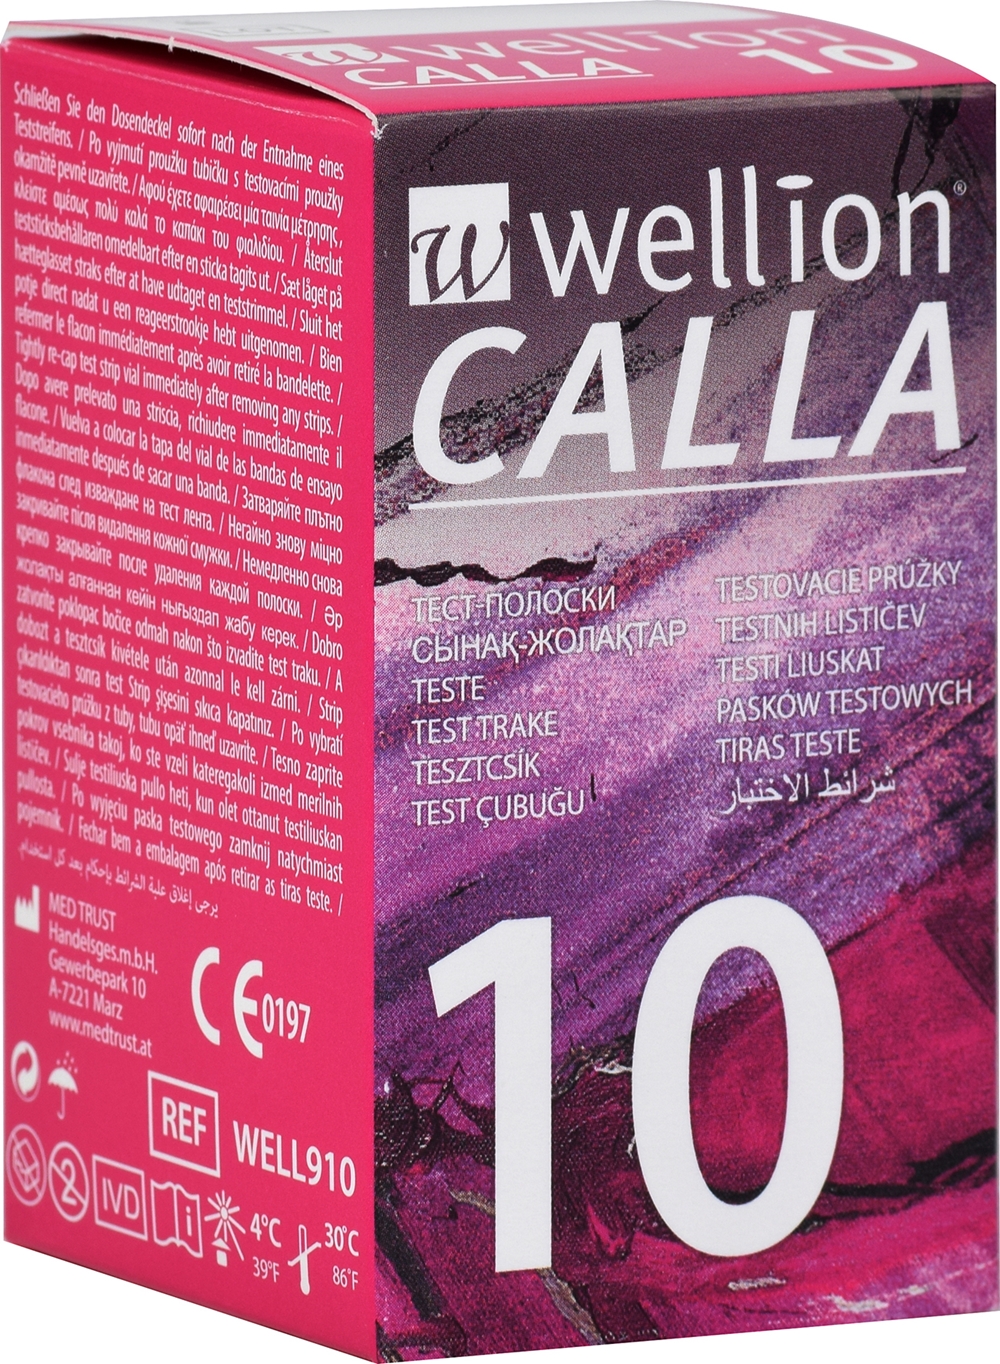 Teststicka blodglukos - Wellion CALLA 1x10st - 10 st